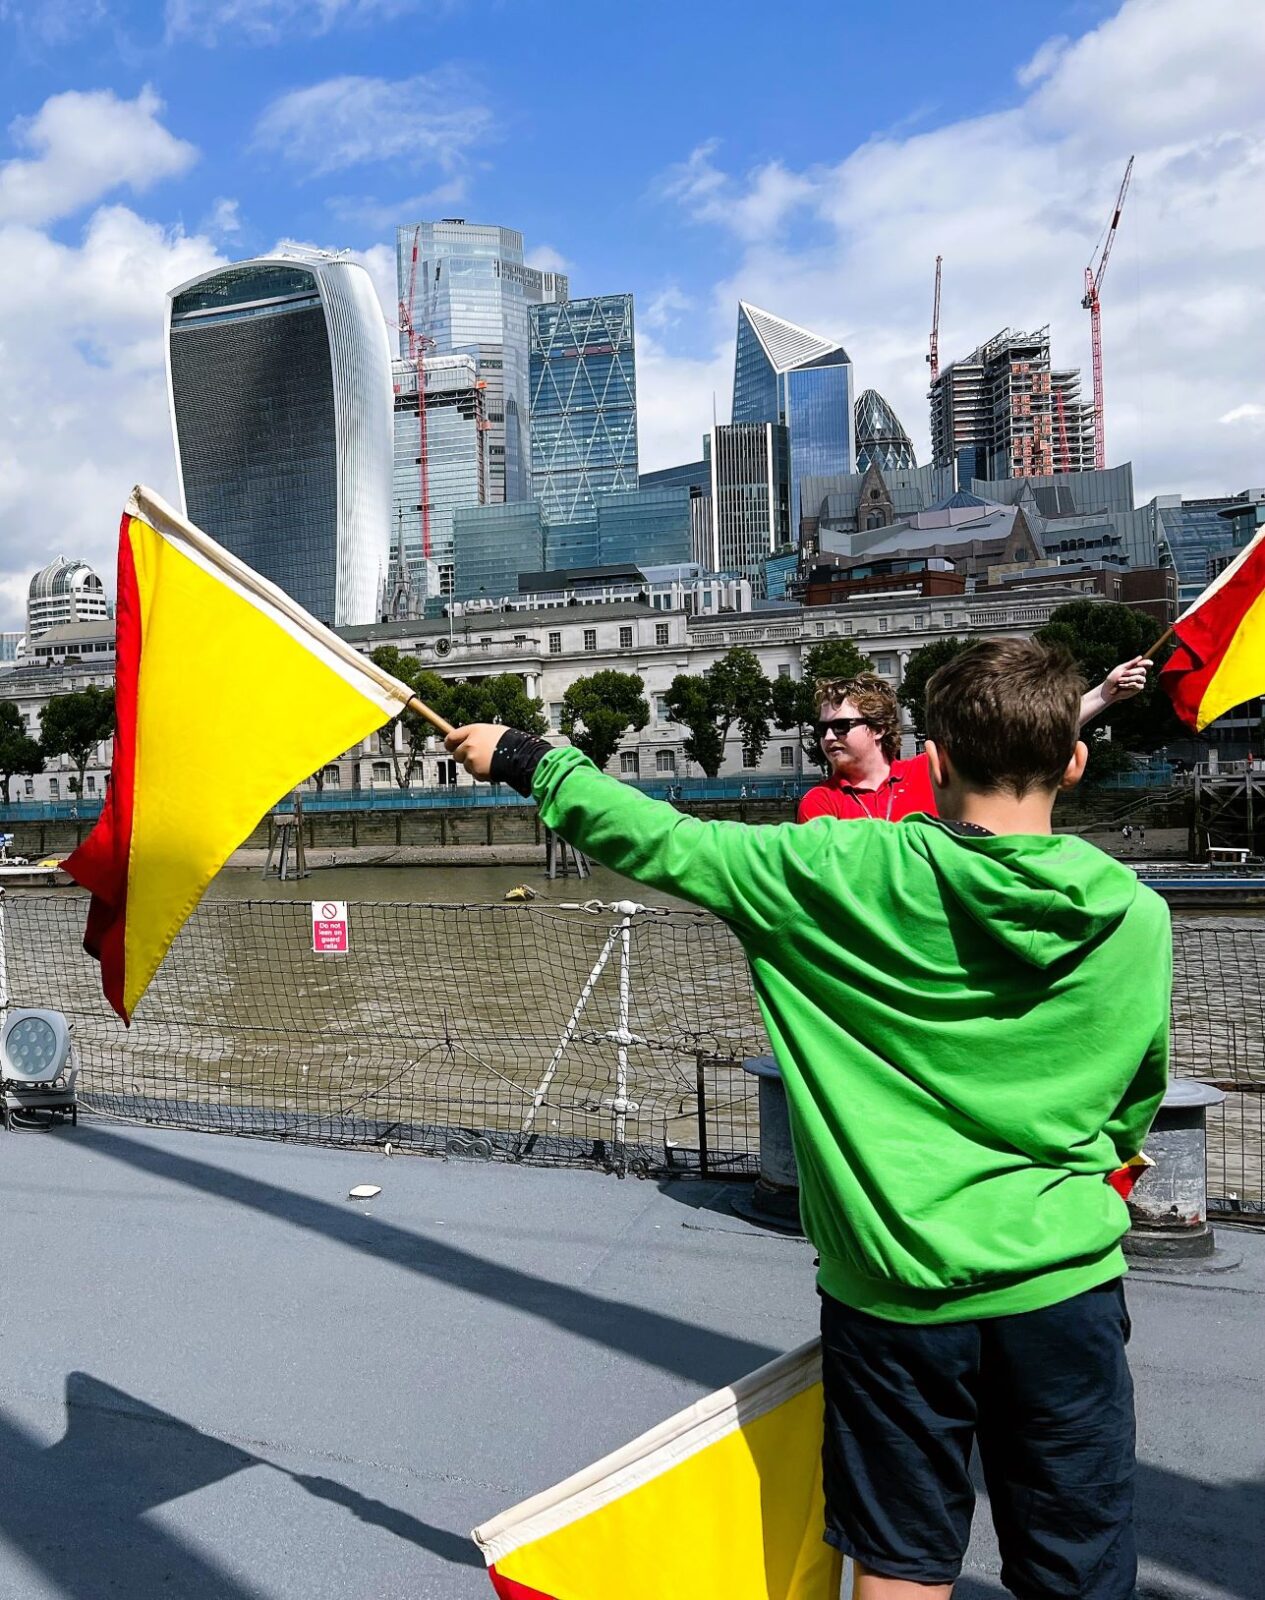 We’re on a boat: London’s HMS Belfast